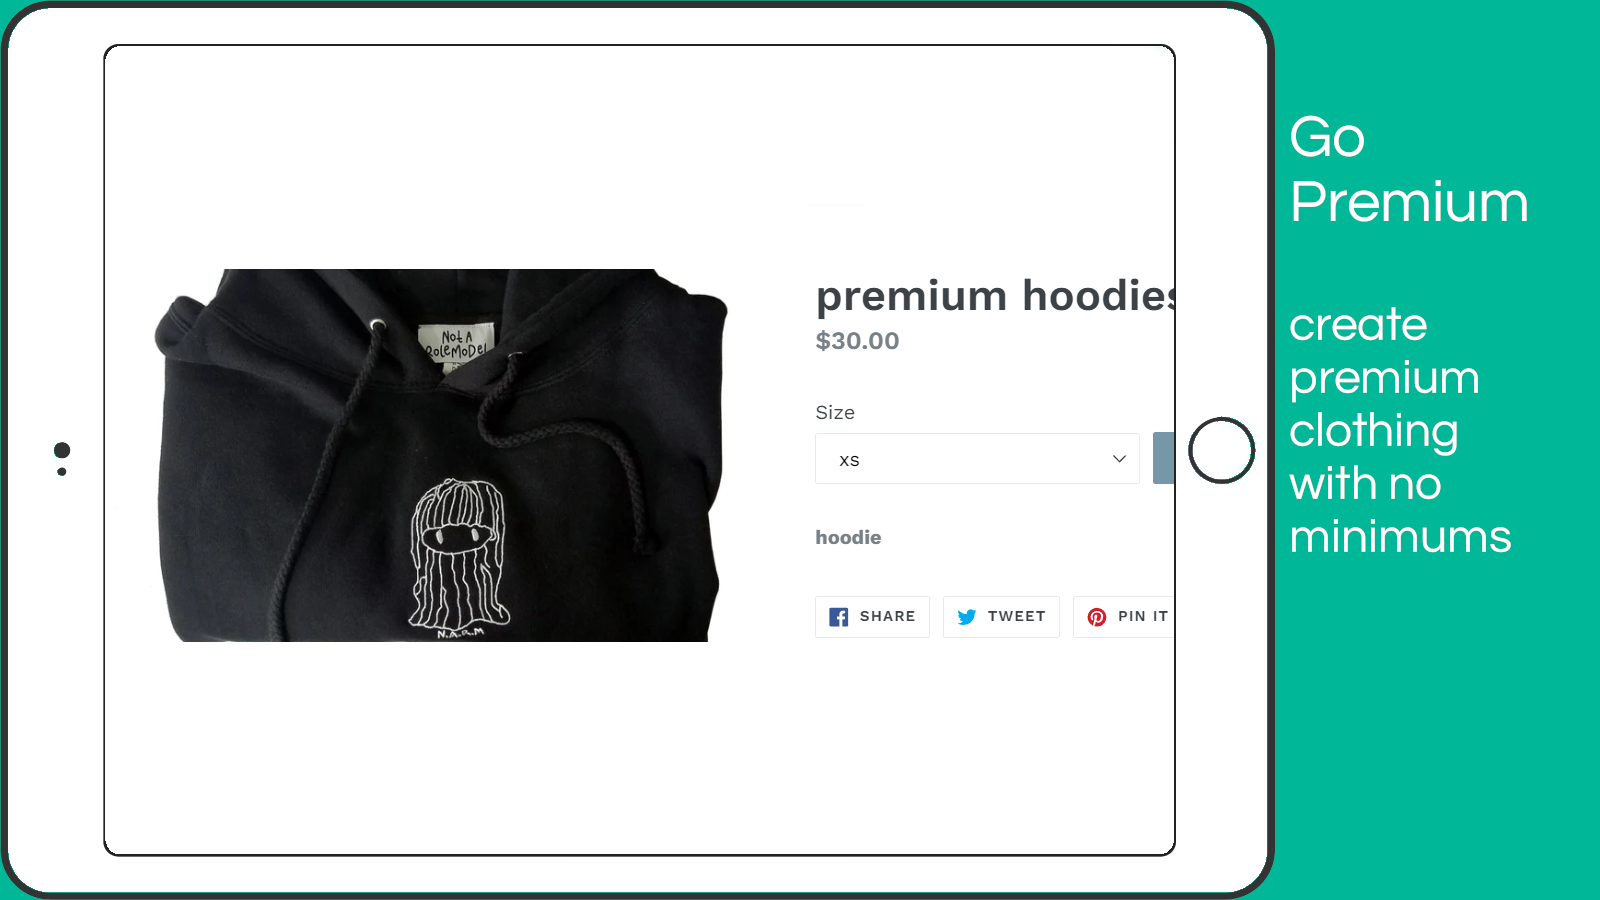 Eindelijk hoodies met uw labels (geen Gildan tags meer!!)